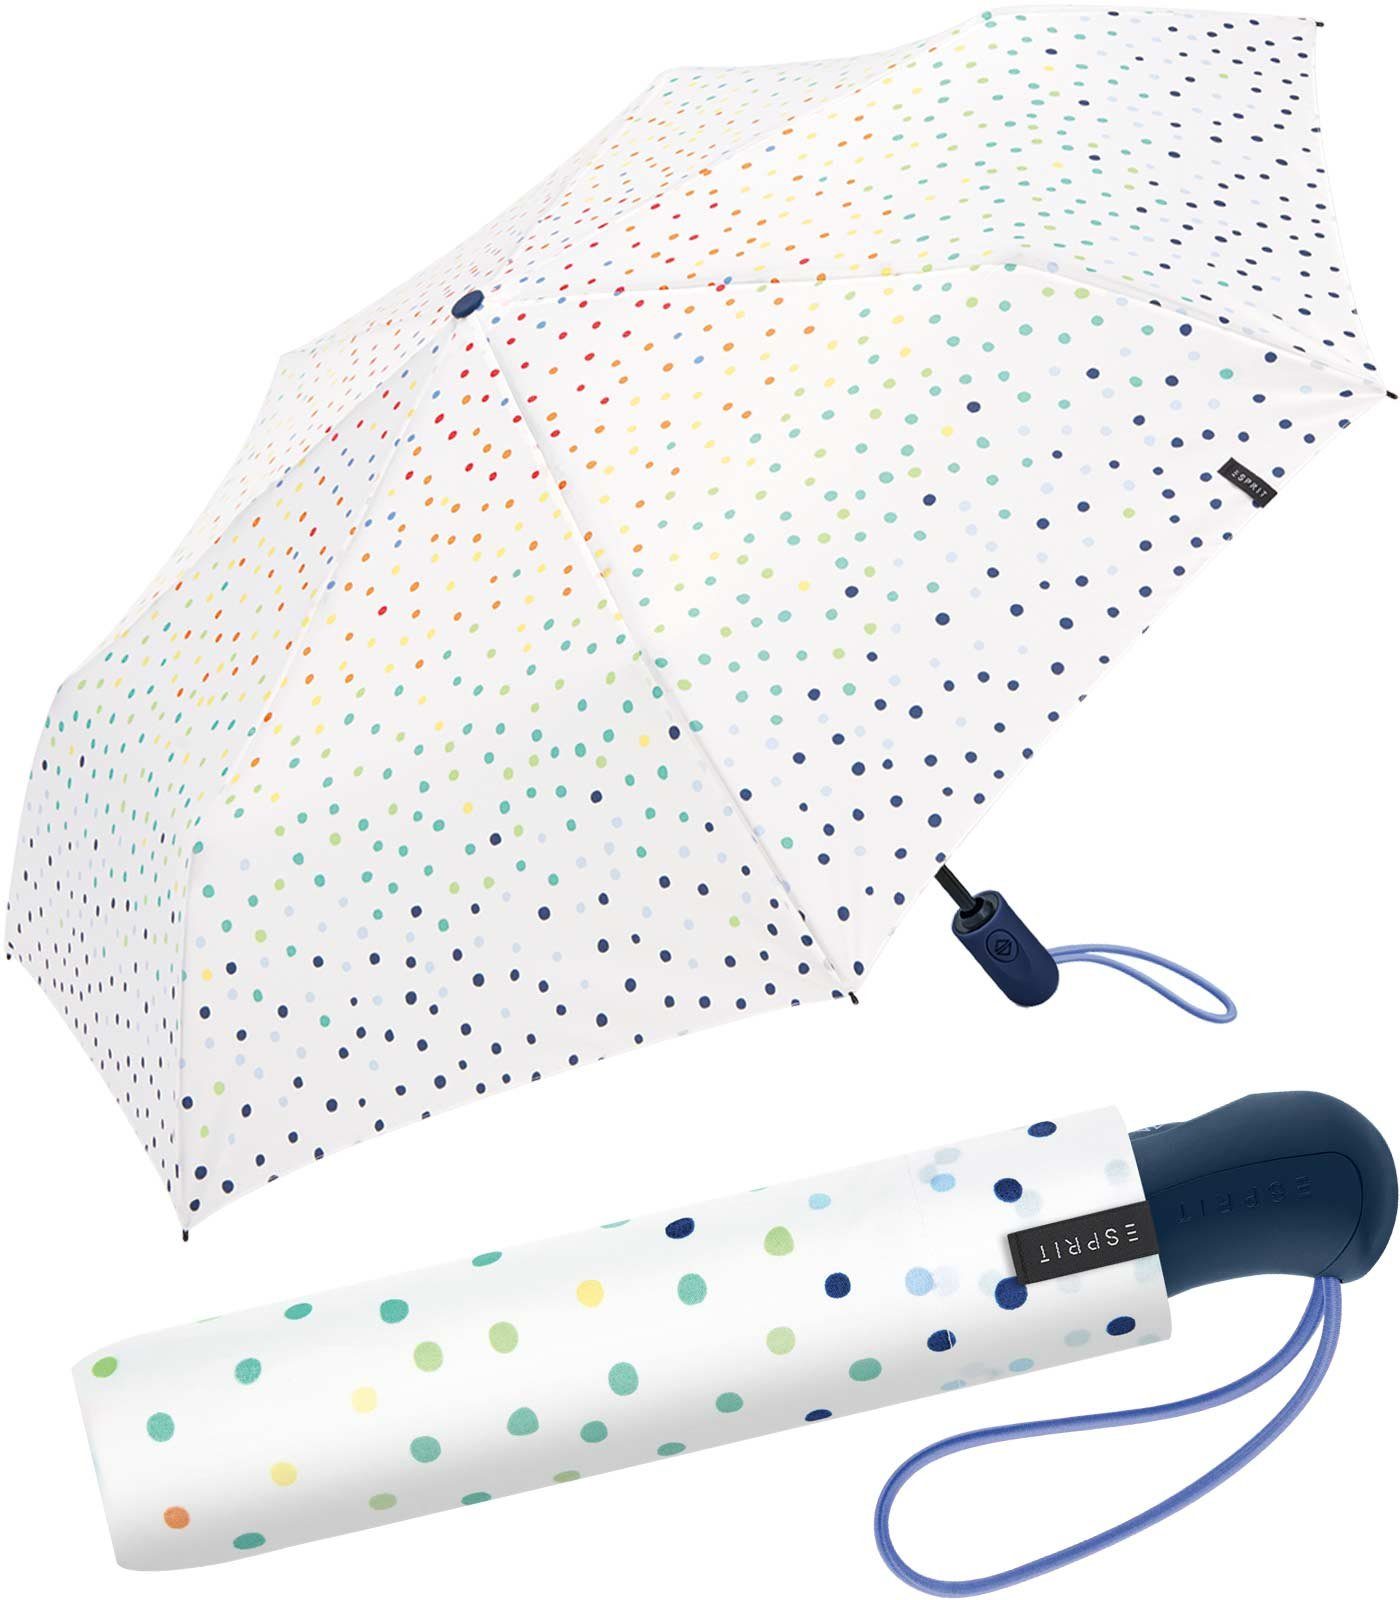 Esprit Langregenschirm Damen-Taschenschirm klein und stabil mit Automatik, farbenfroh bedruckt mit kleinen Punkten